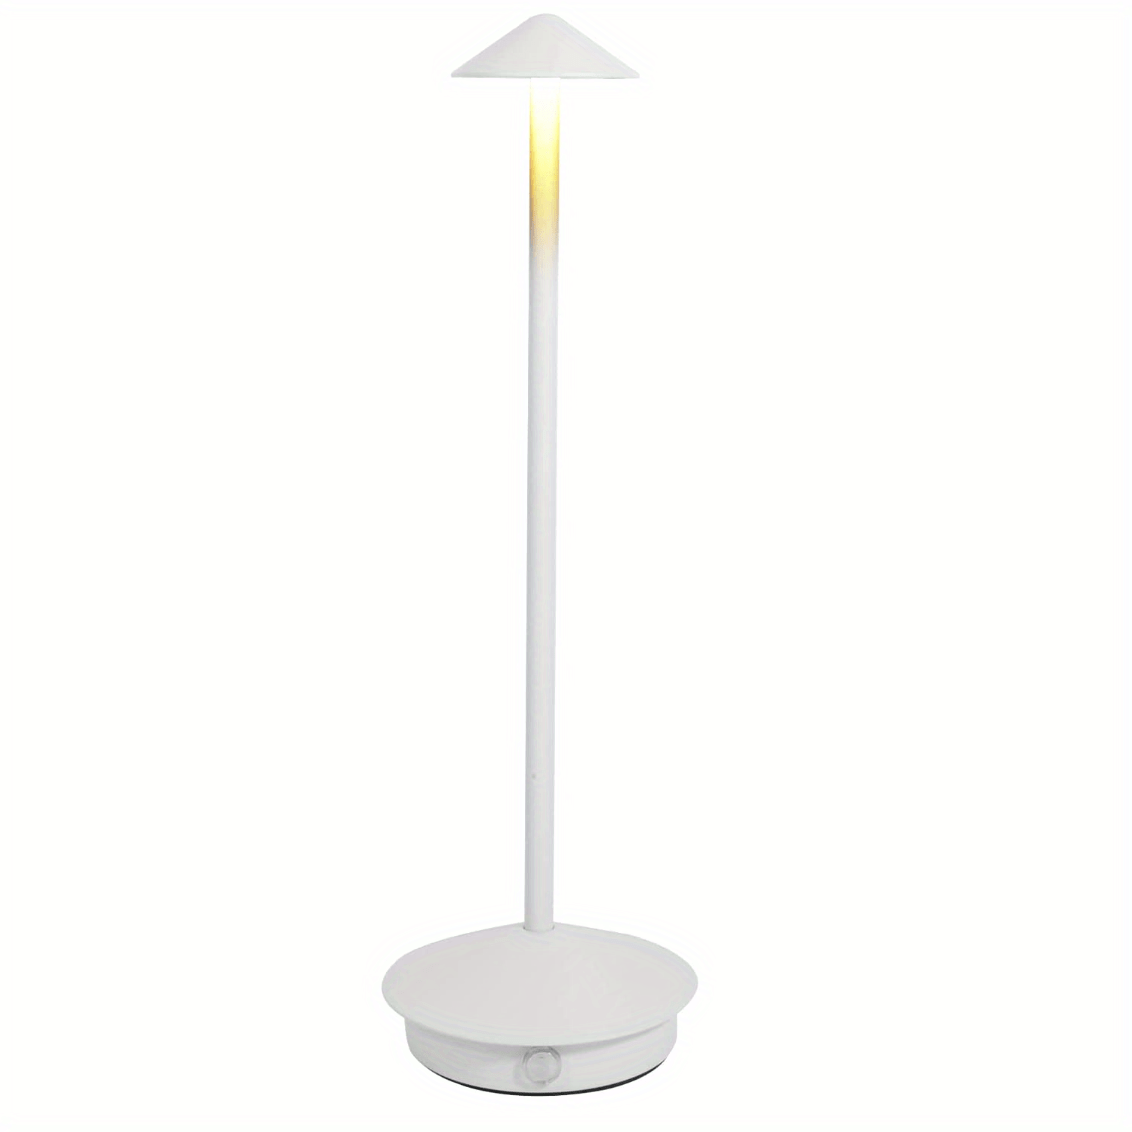  ZZWS Lámpara de mesa inalámbrica recargable - Modernas lámparas  de mesa táctiles para mesa - Lámpara de noche LED regulable Lámparas  inalámbricas para mesita de noche, dormitorio, sala de estar, 